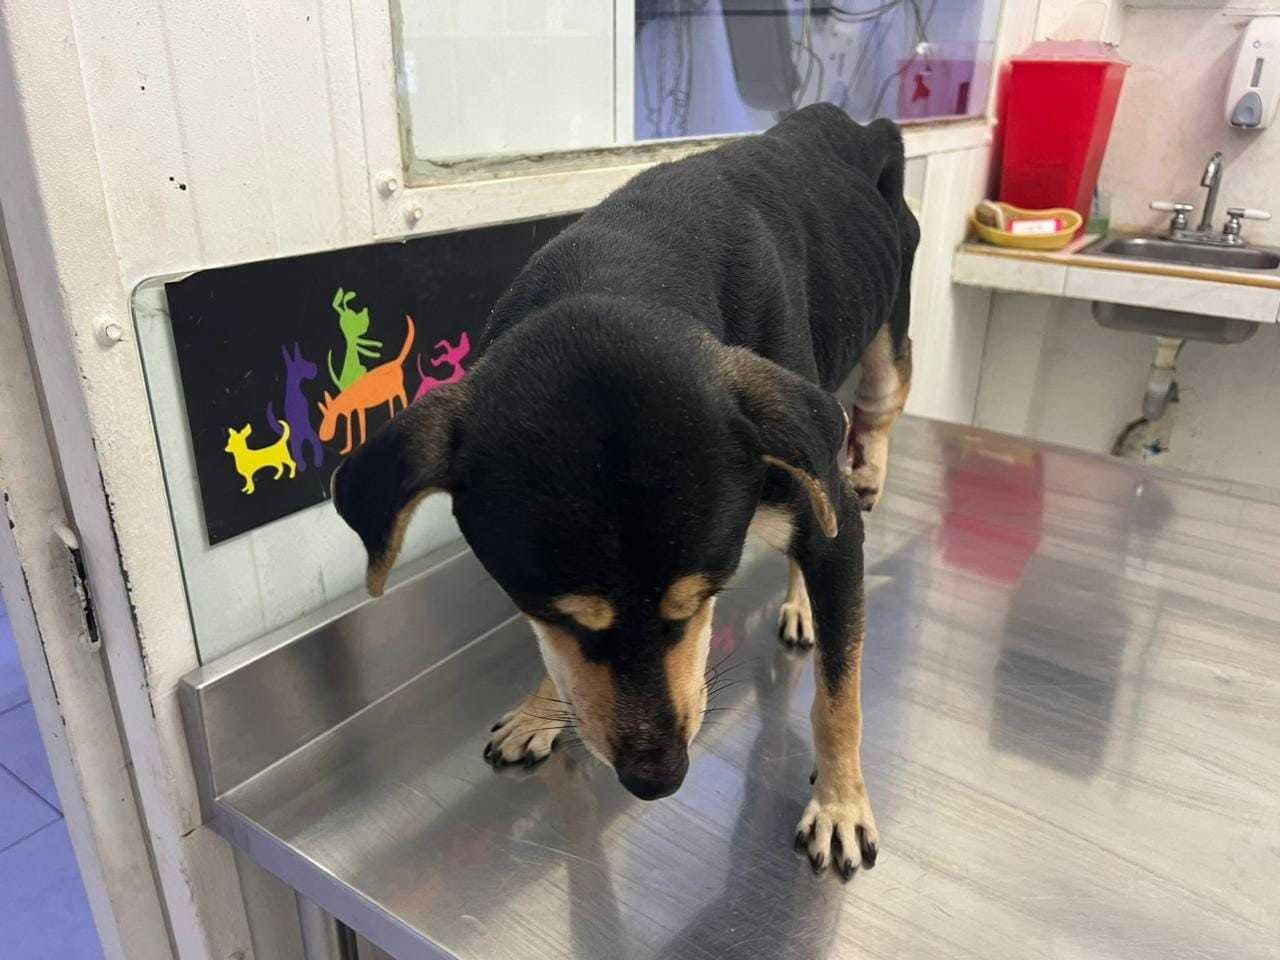 El perrito Toñito ha pasado por una experiencia traumática debido a la negligencia de sus dueños.  Foto. Facebook